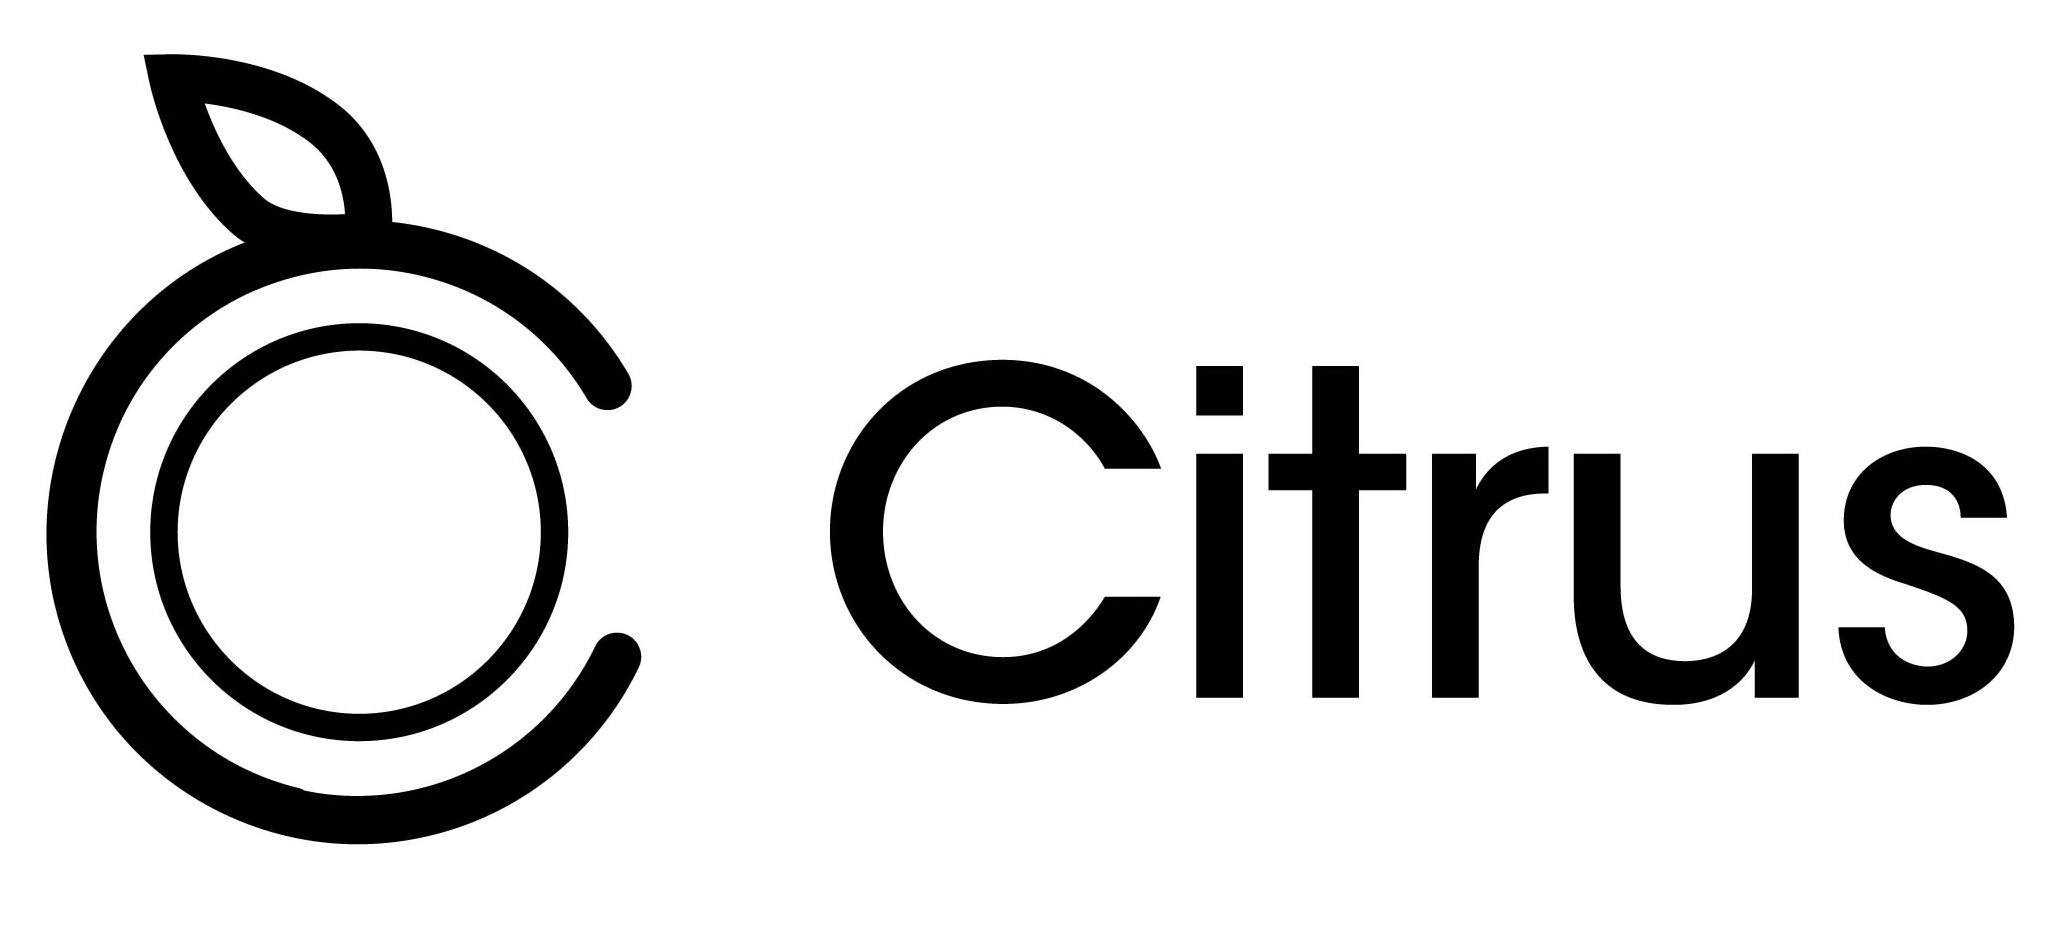 Trademark Logo CITRUS